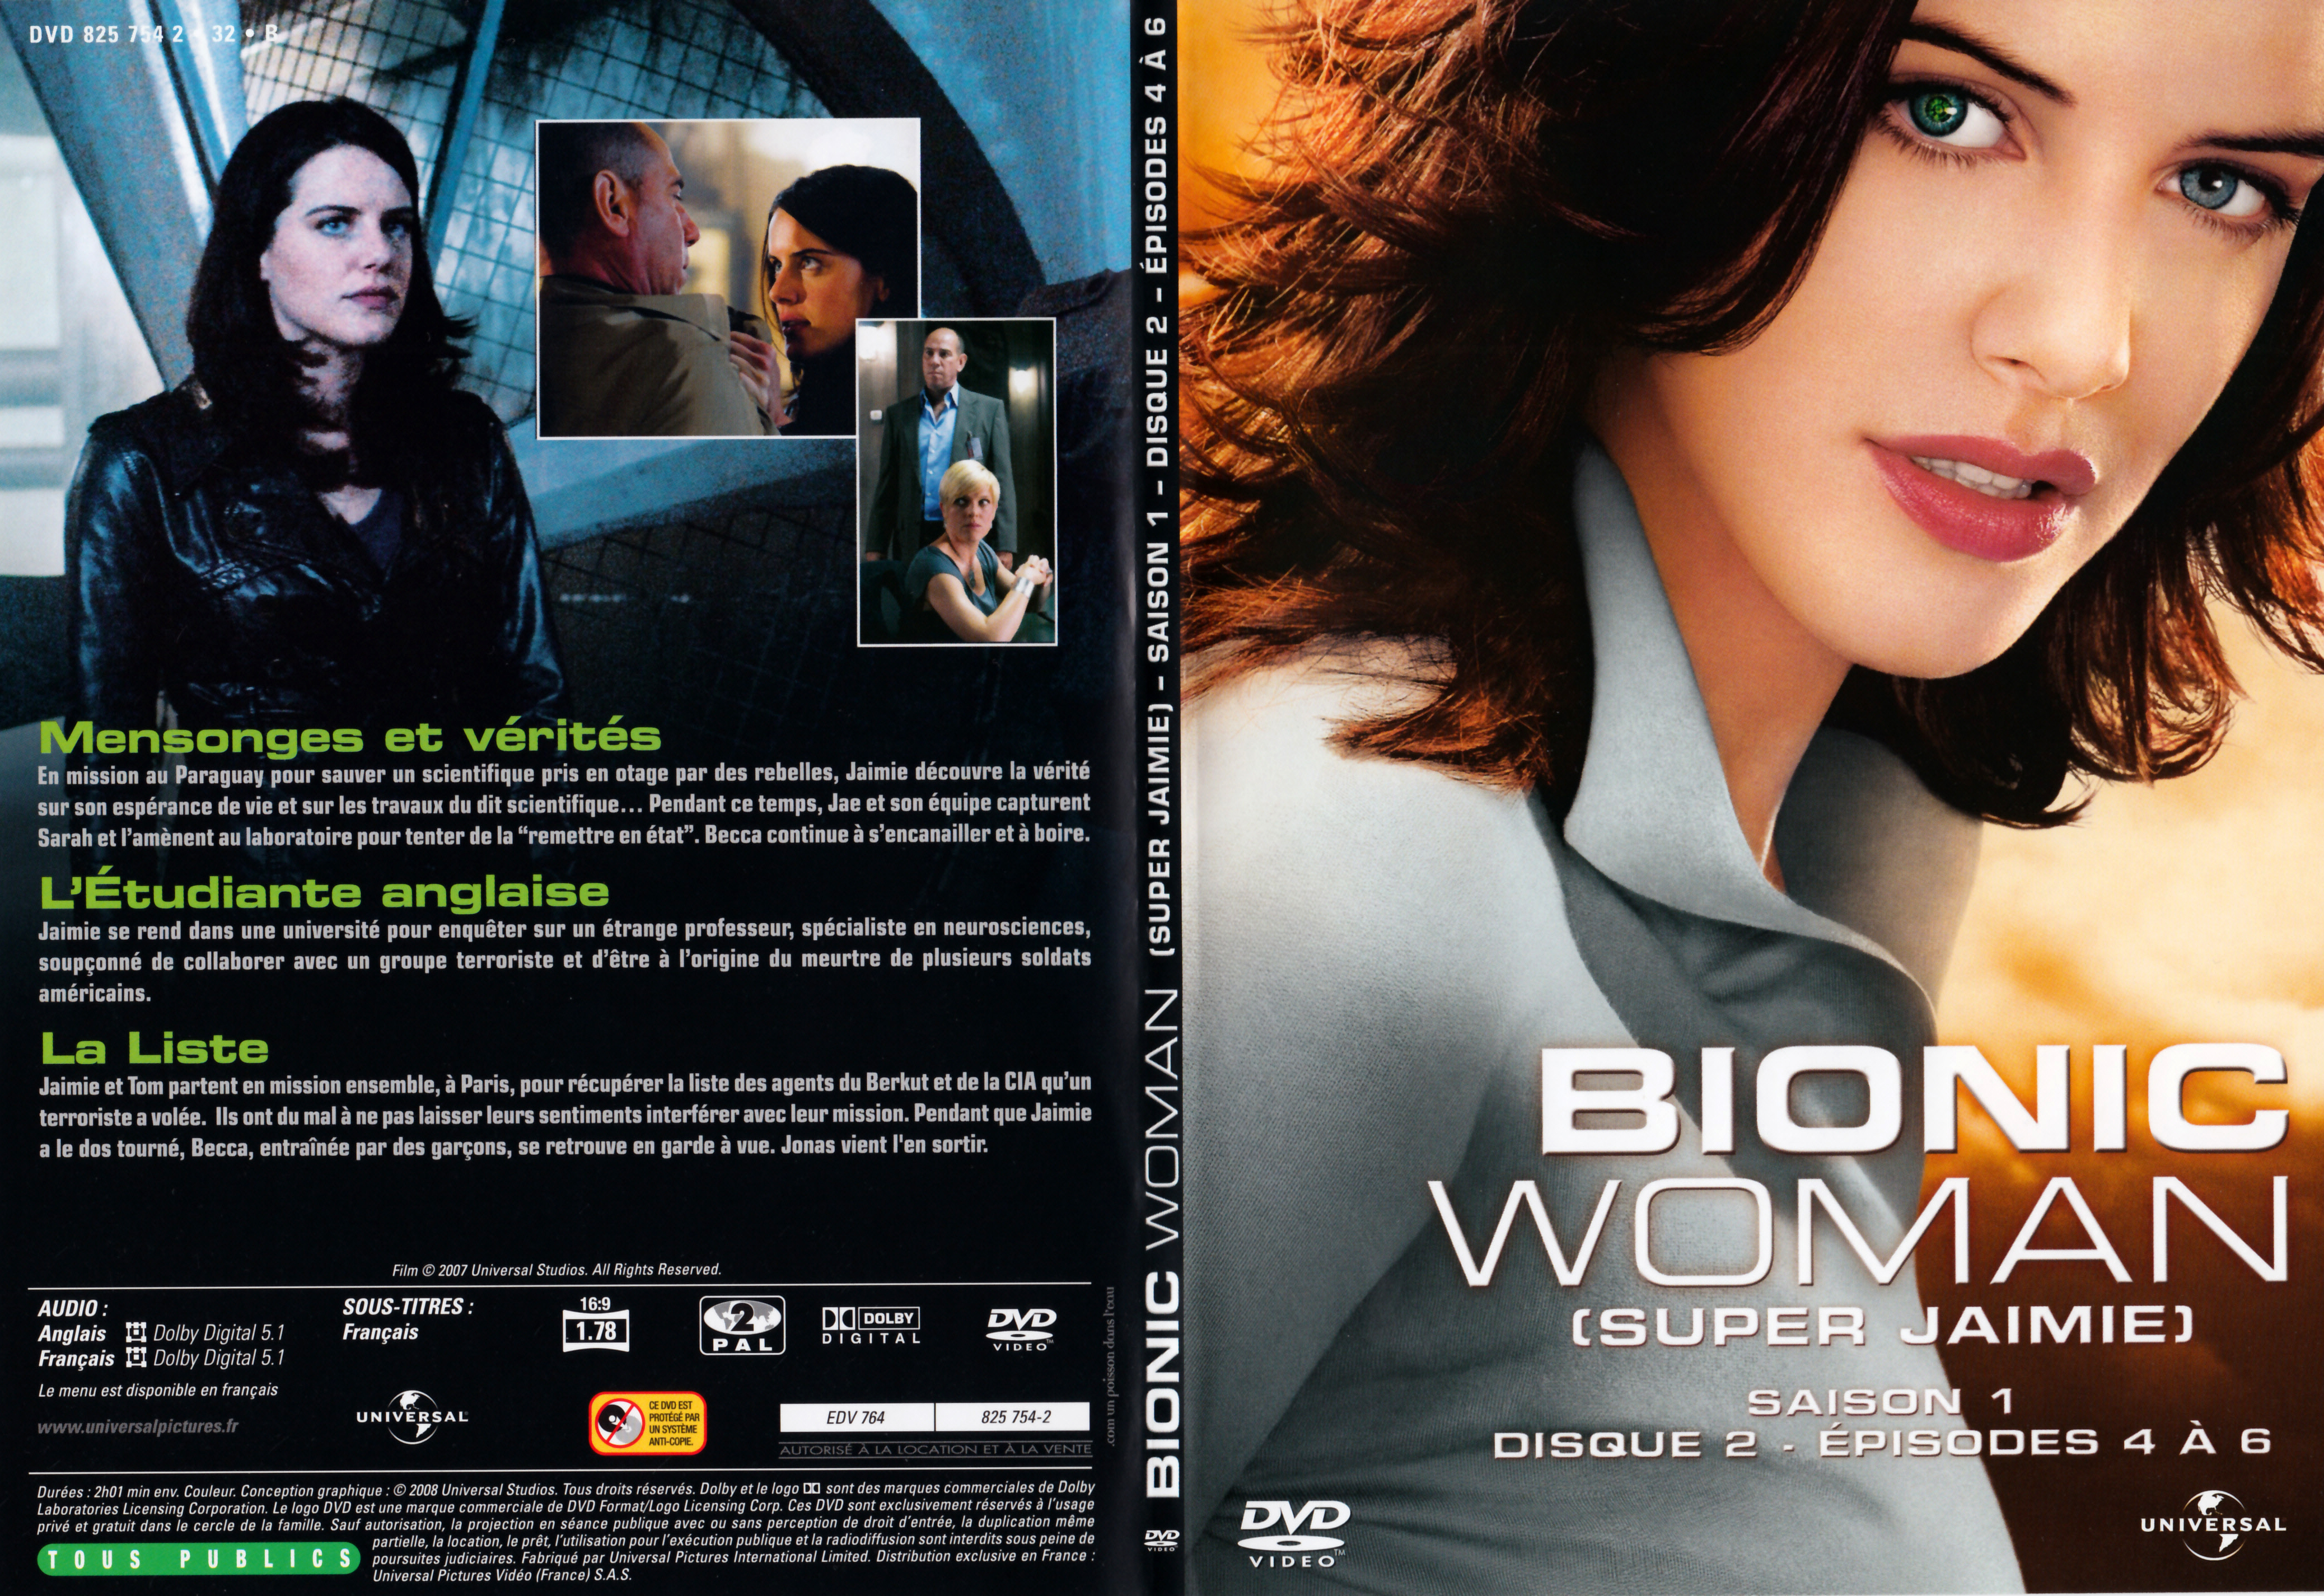 Jaquette DVD Bionic Woman - Super Jaimie Saison 1 DVD 2